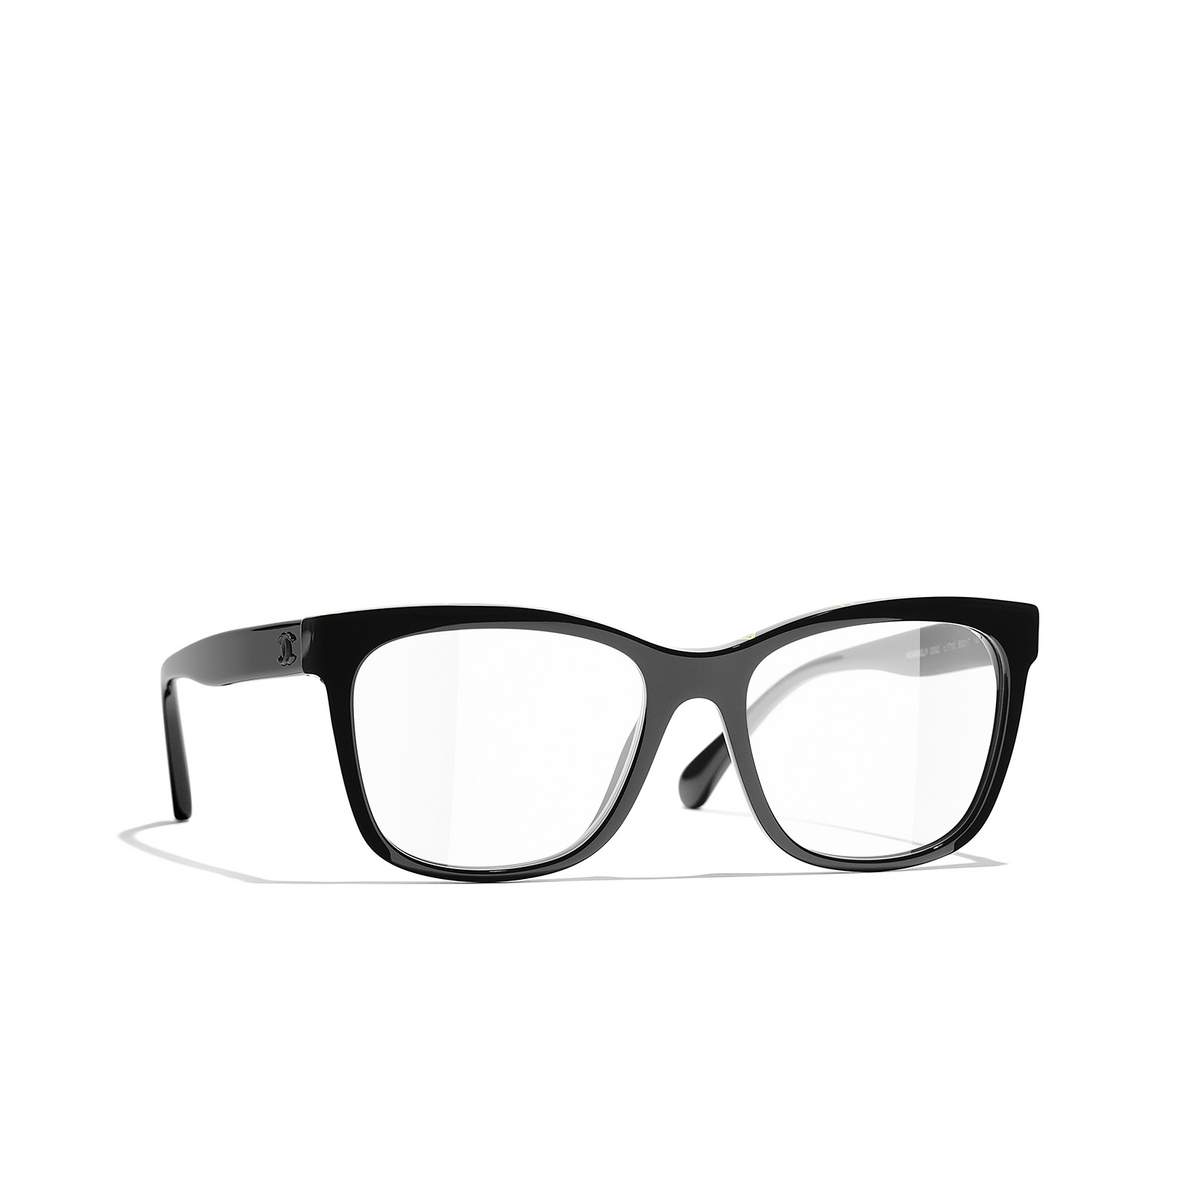 CHANEL square Eyeglasses 1712 Black & Yellow - three-quarters view